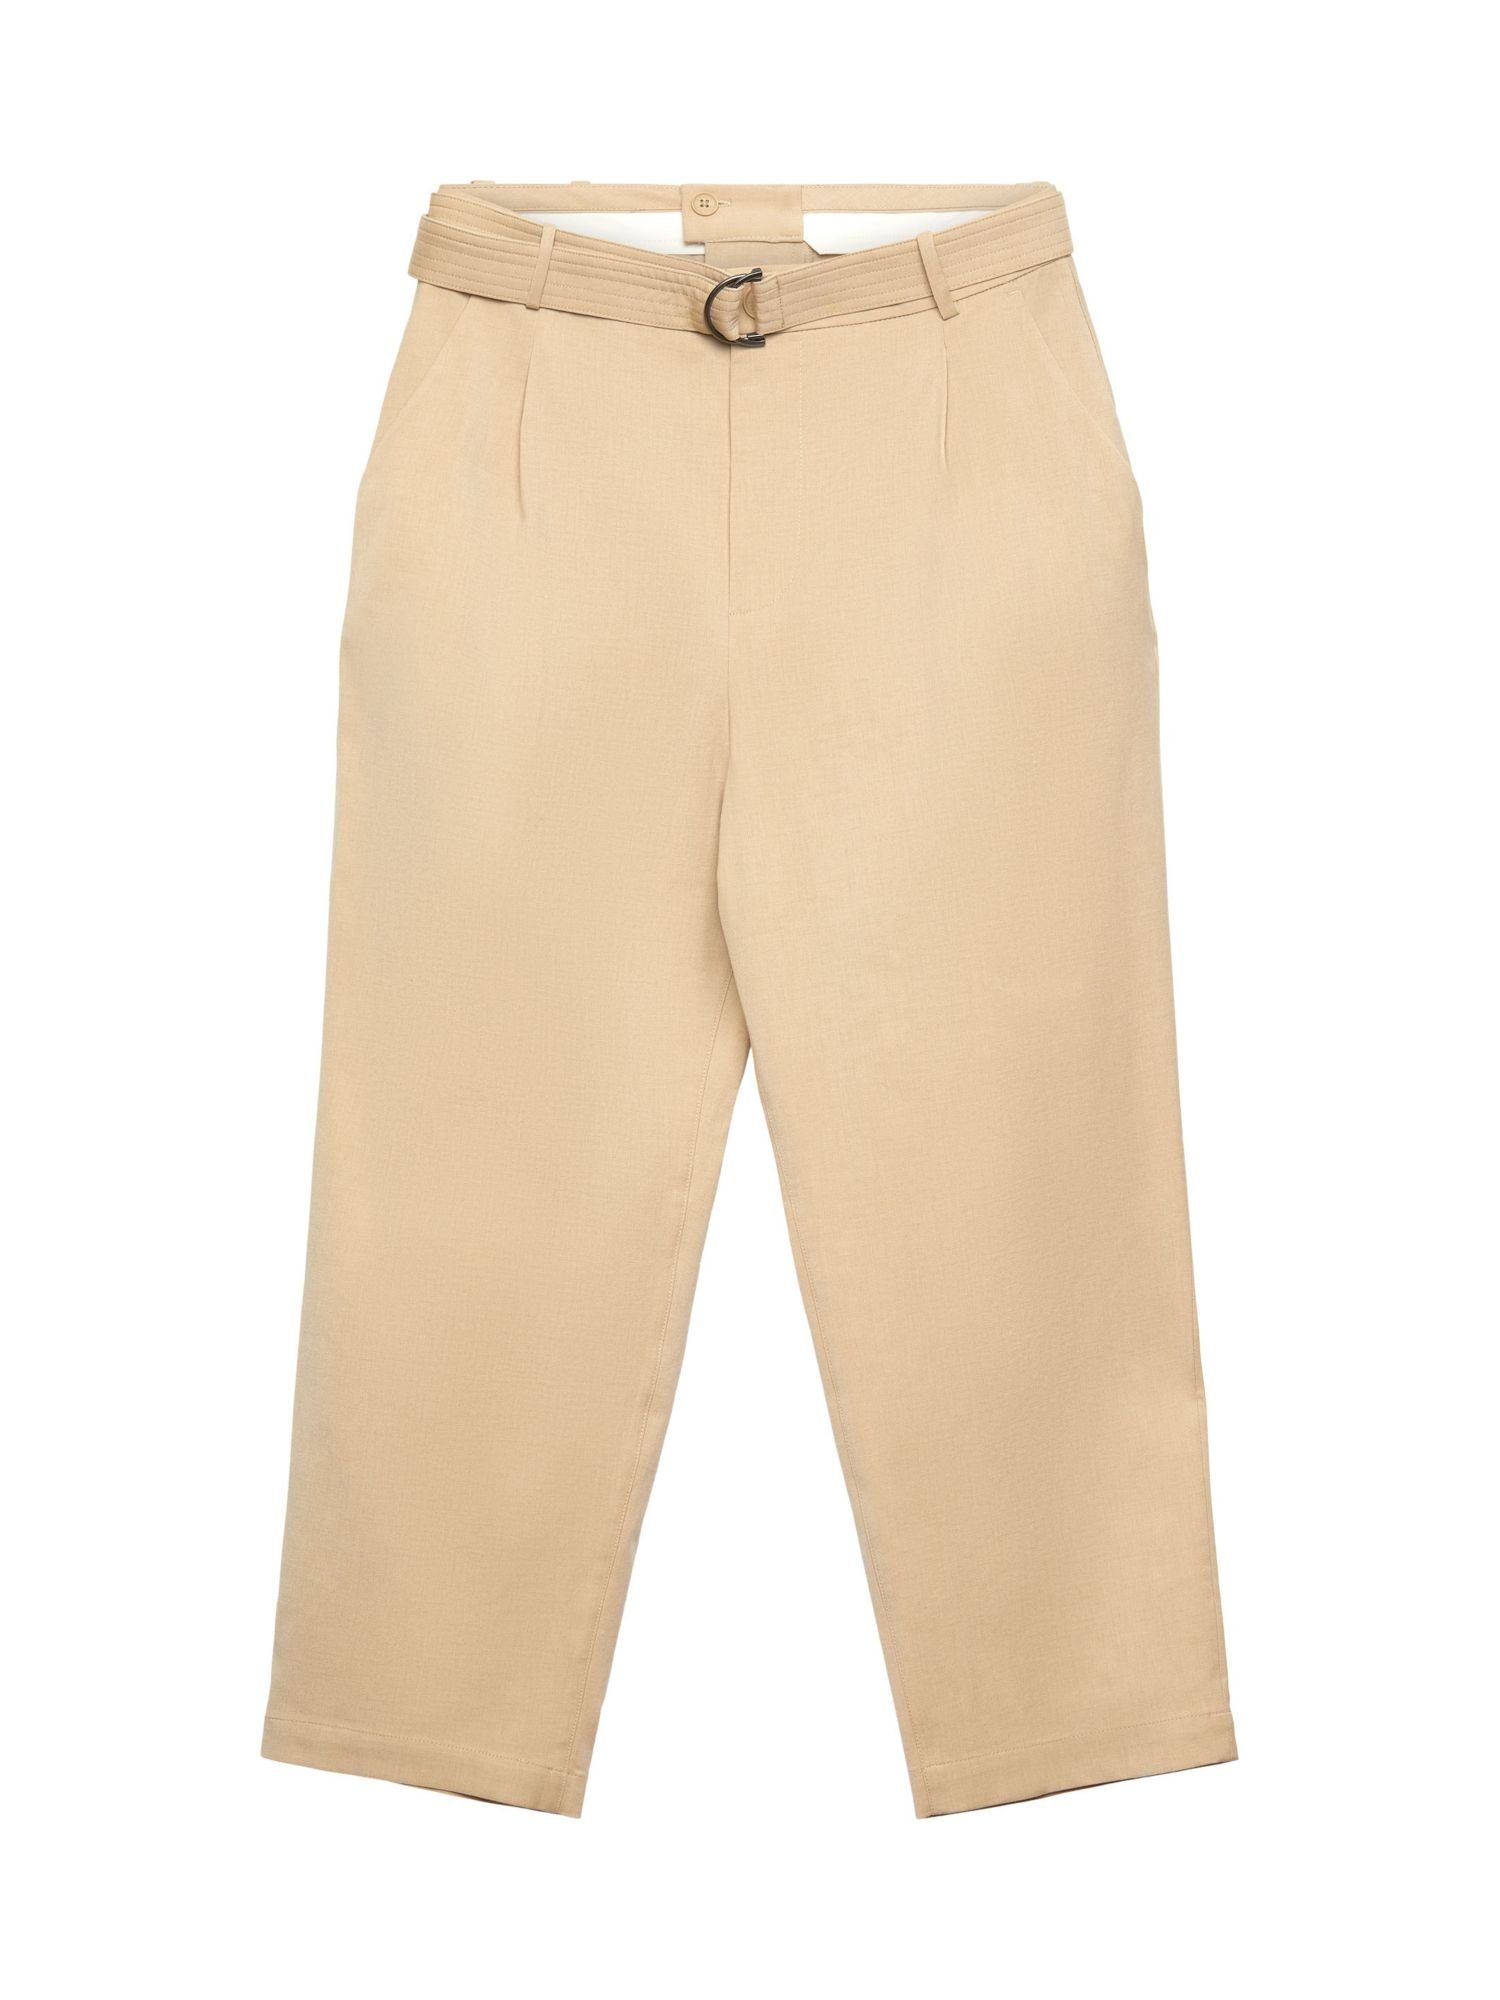 Esprit Collection Anzughose Hose mit weitem Bein und Gürtel, Wollmix SAND